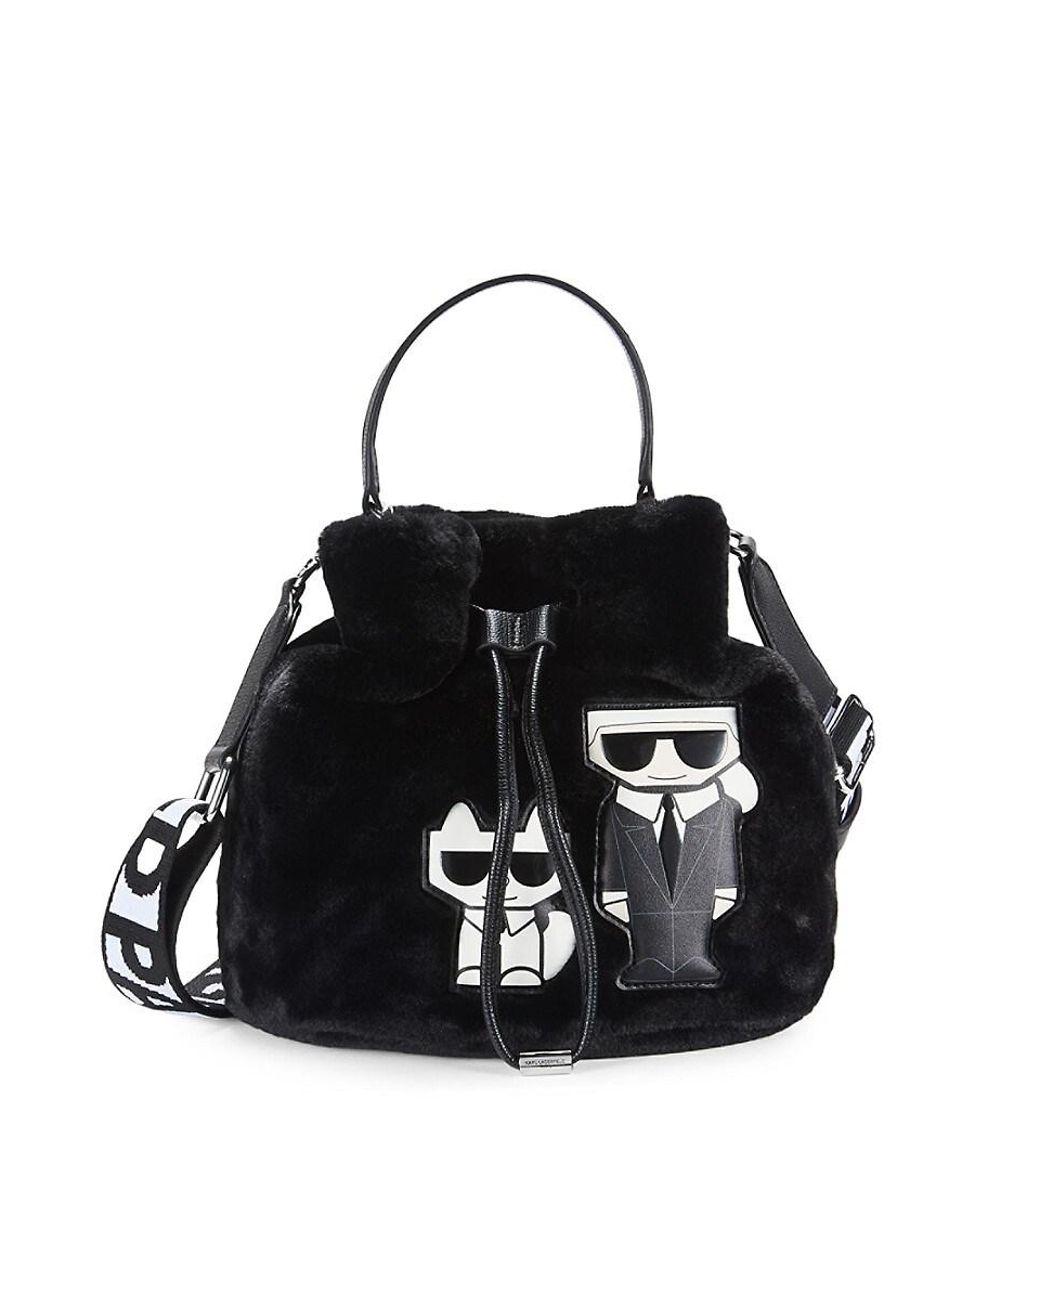 Karl Lagerfeld Faux Fur Top Handle Bucket Bag in Black | Lyst